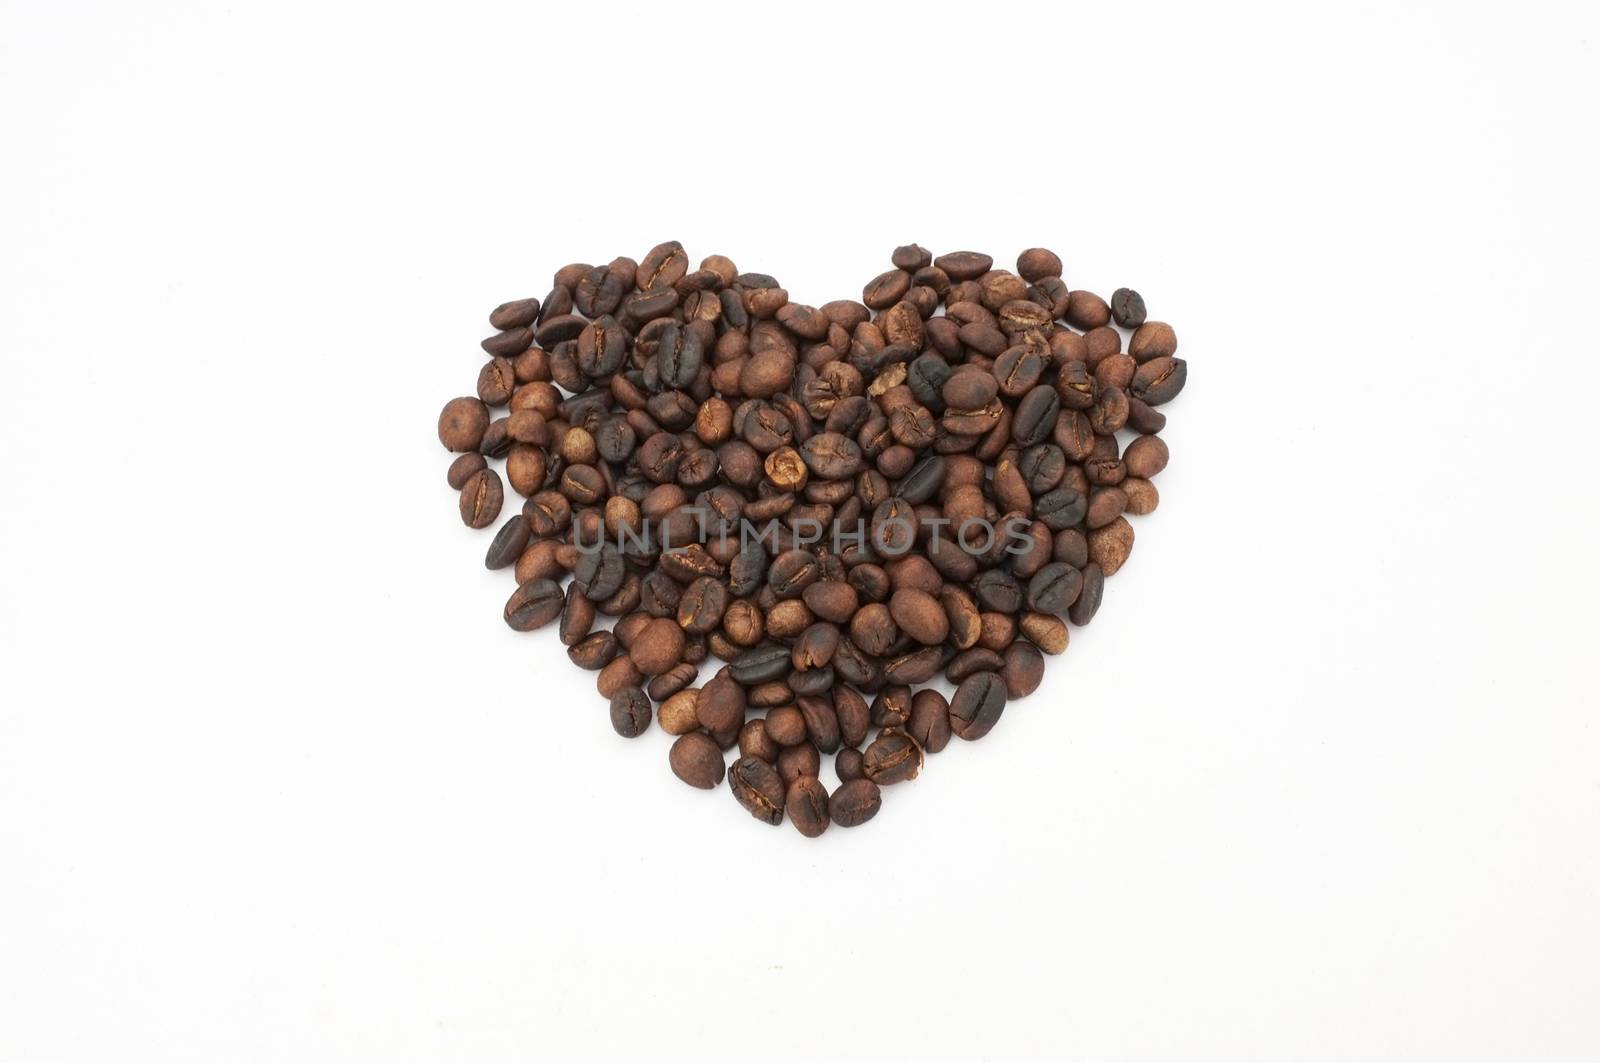 Coffee beans in heart shape by Hepjam